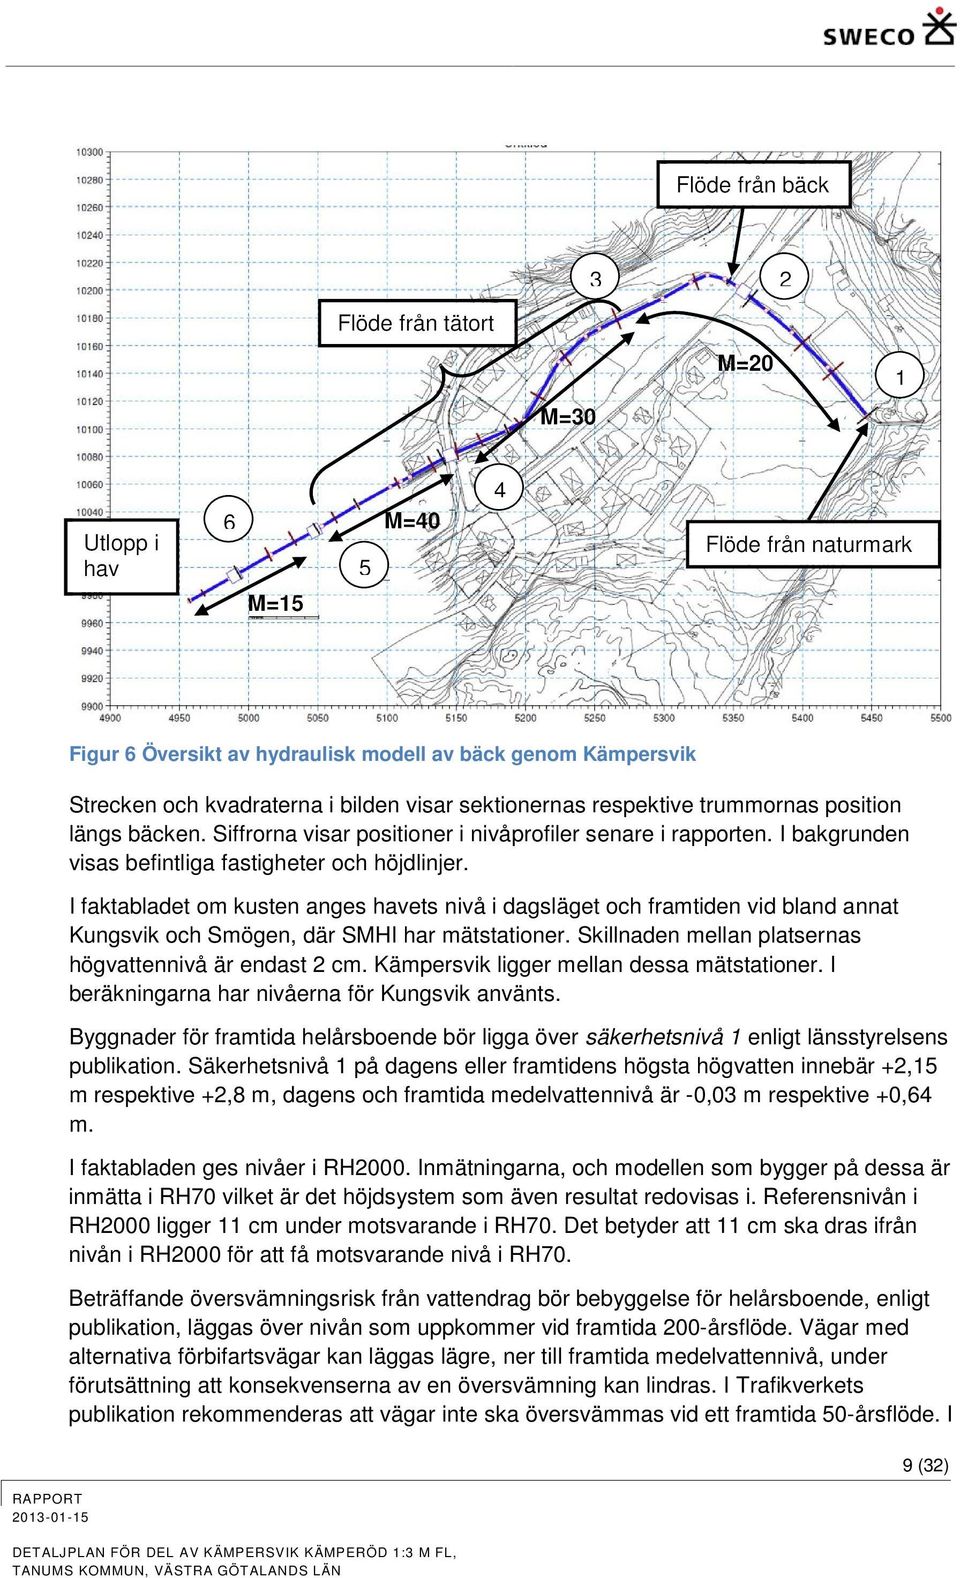 I faktabladet om kusten anges havets nivå i dagsläget och framtiden vid bland annat Kungsvik och Smögen, där SMHI har mätstationer. Skillnaden mellan platsernas högvattennivå är endast 2 cm.